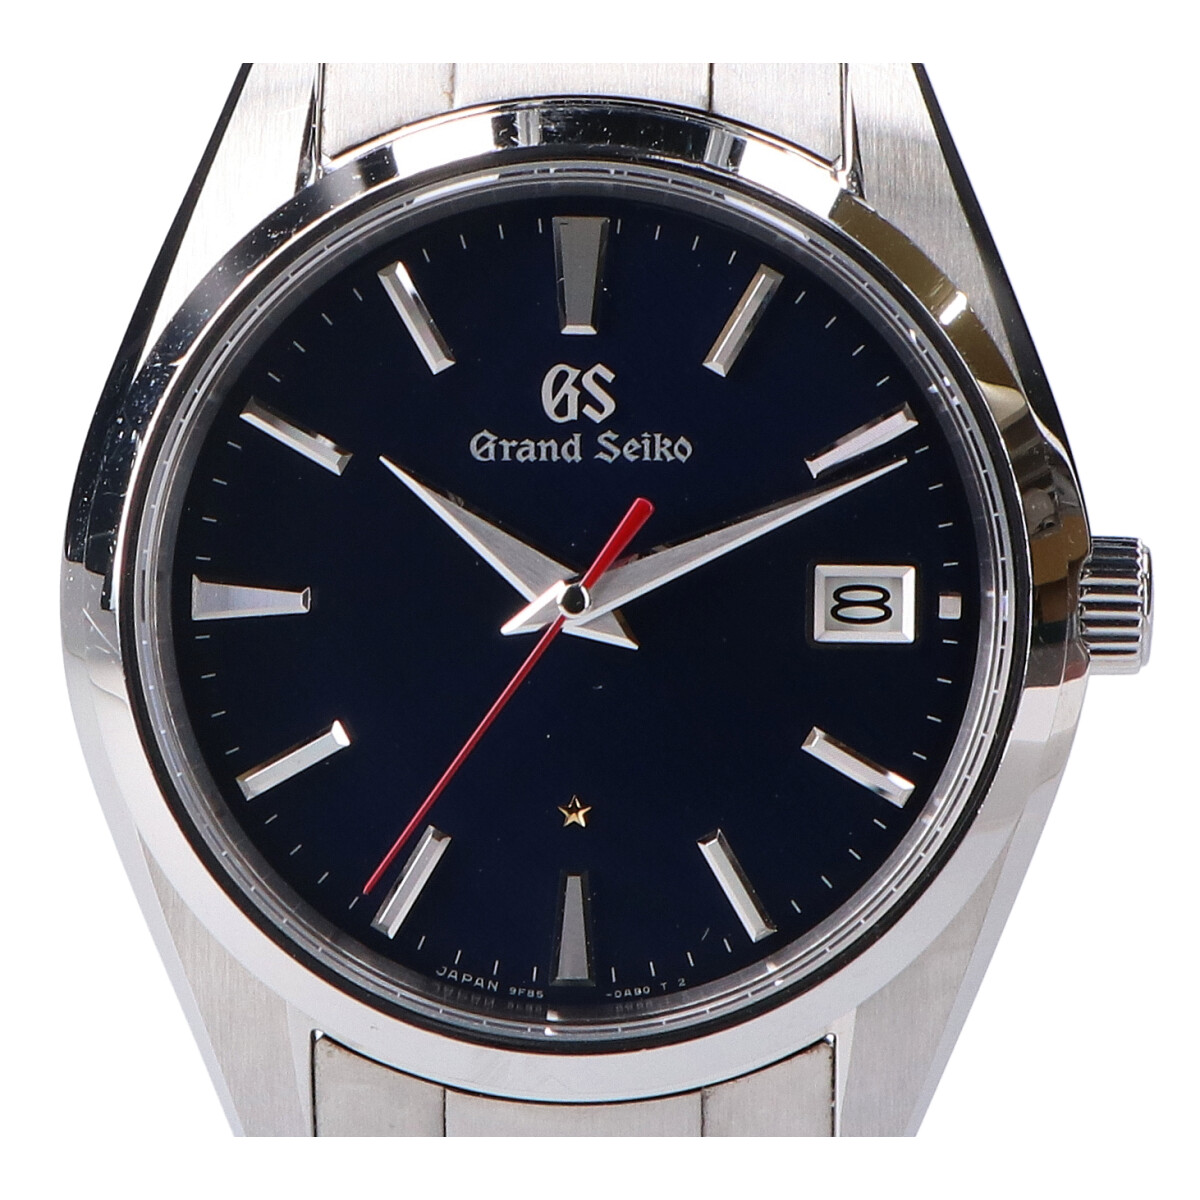 グランドセイコーのS/S SBGP007 60周年記念 2500本限定 自動巻き 腕時計の買取実績です。